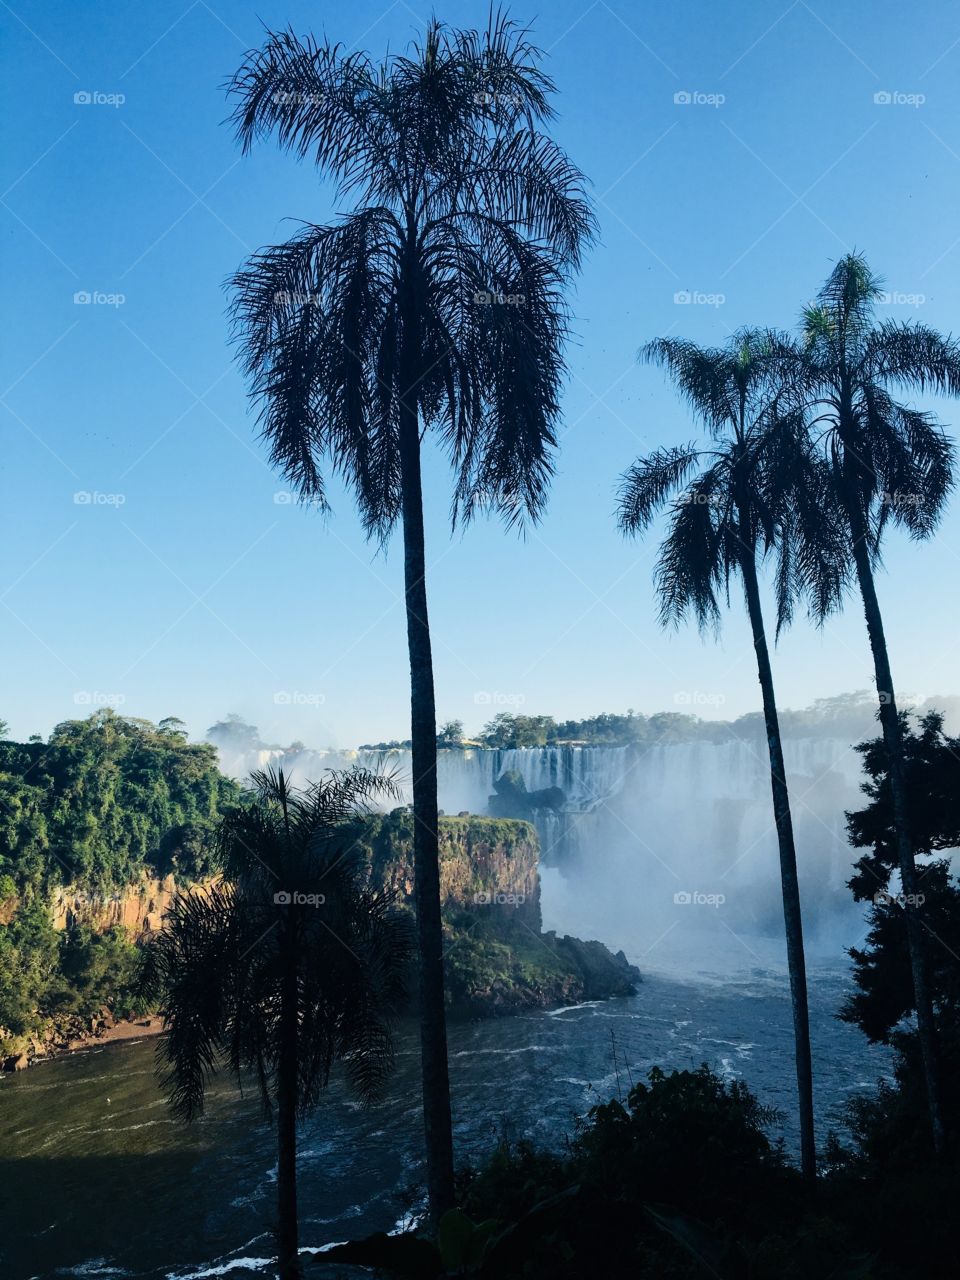 Foz de Iguazú 